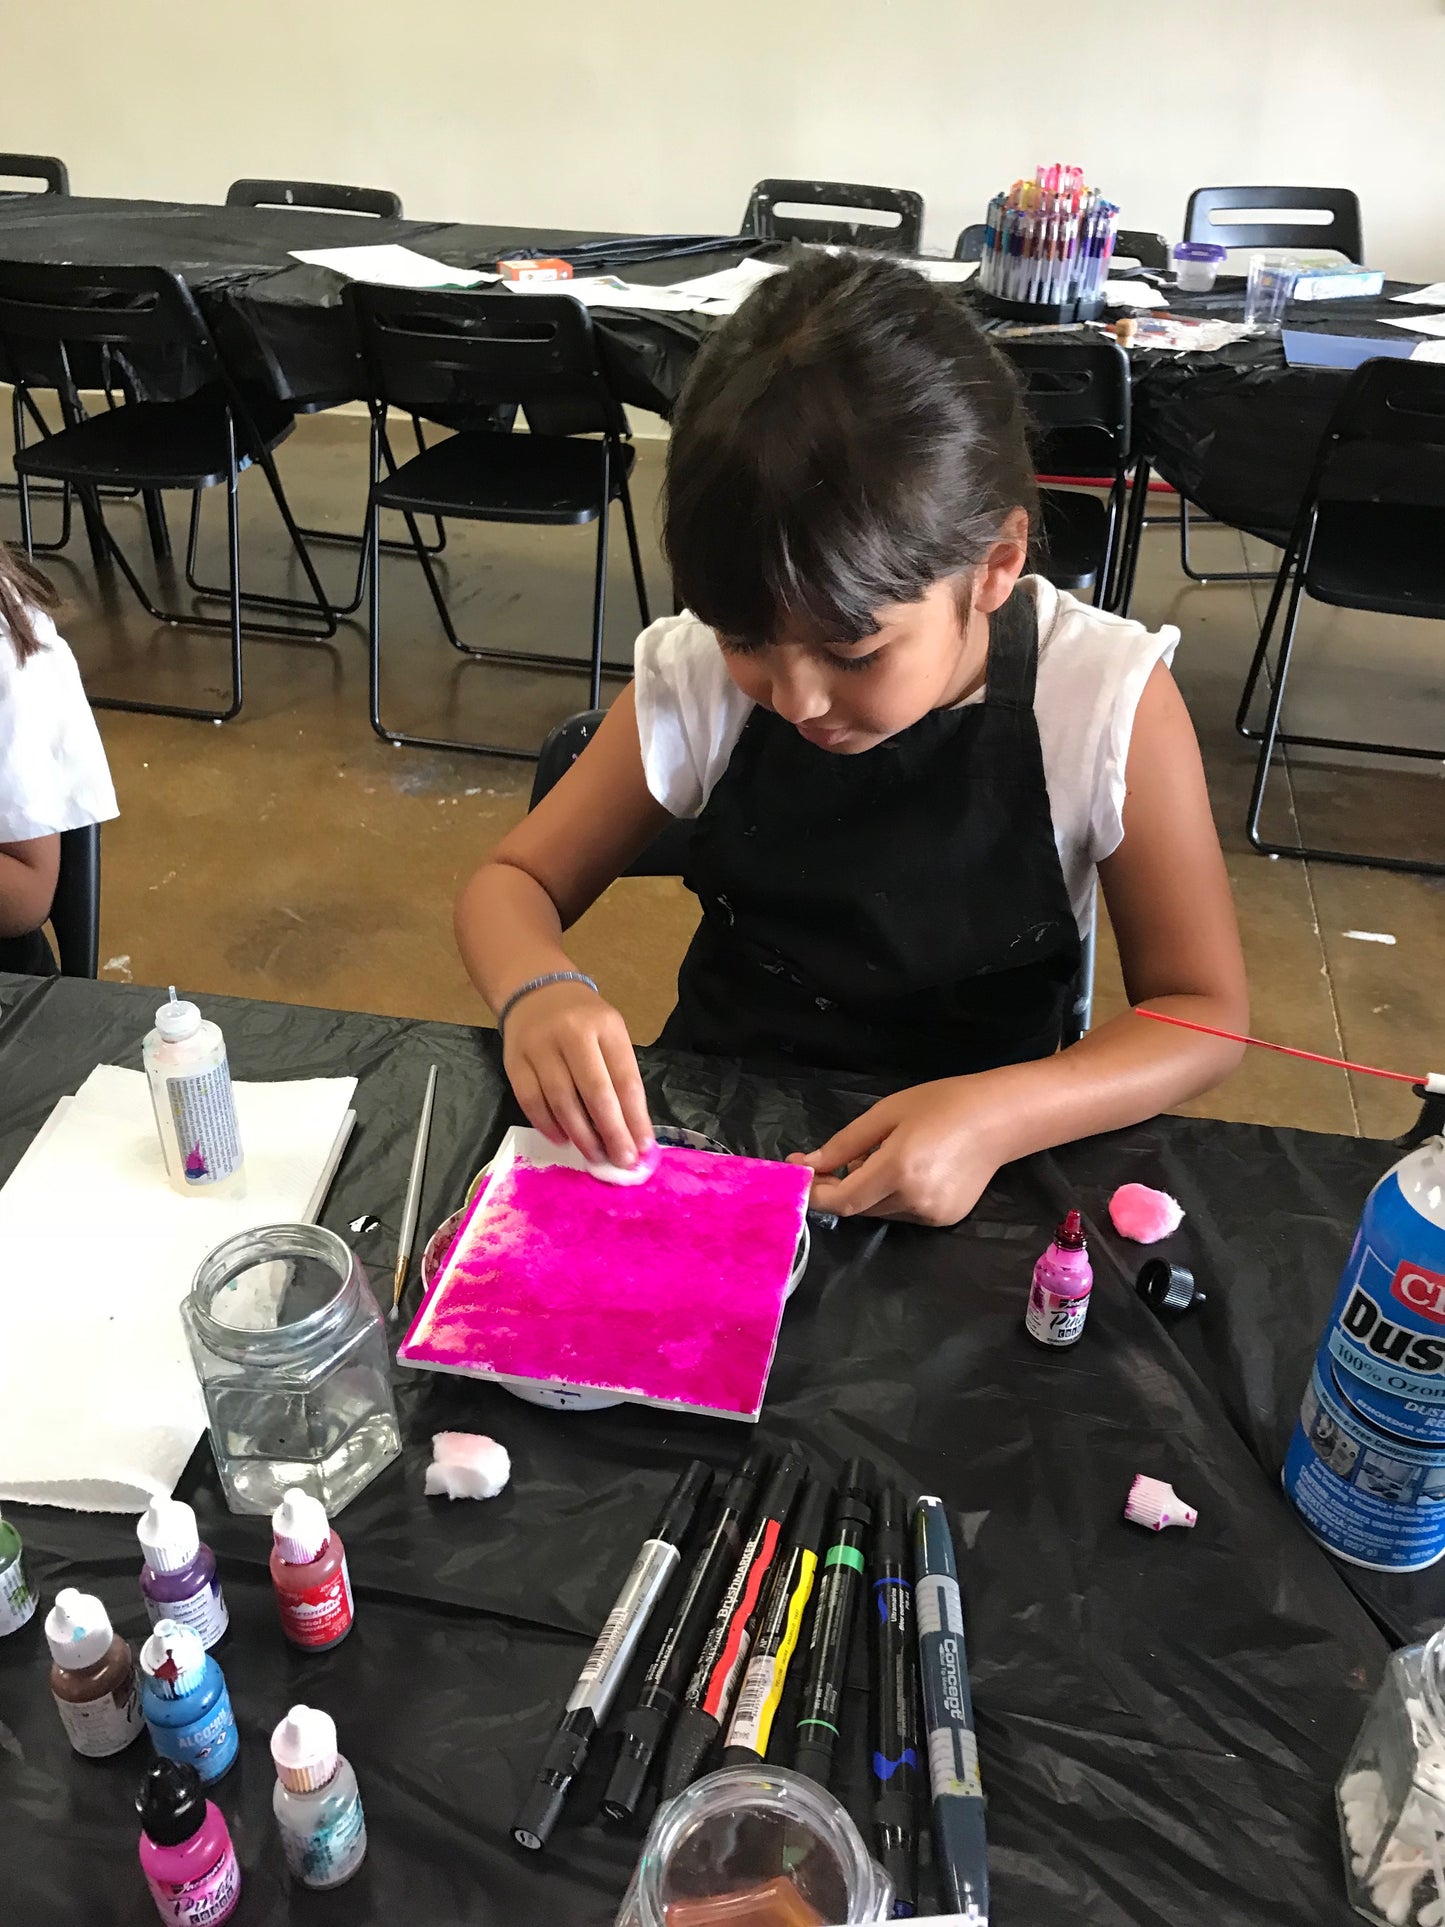 Sat, Mar 2, 10a-12p “Kids Paint: Collage Work” Public Houston Class